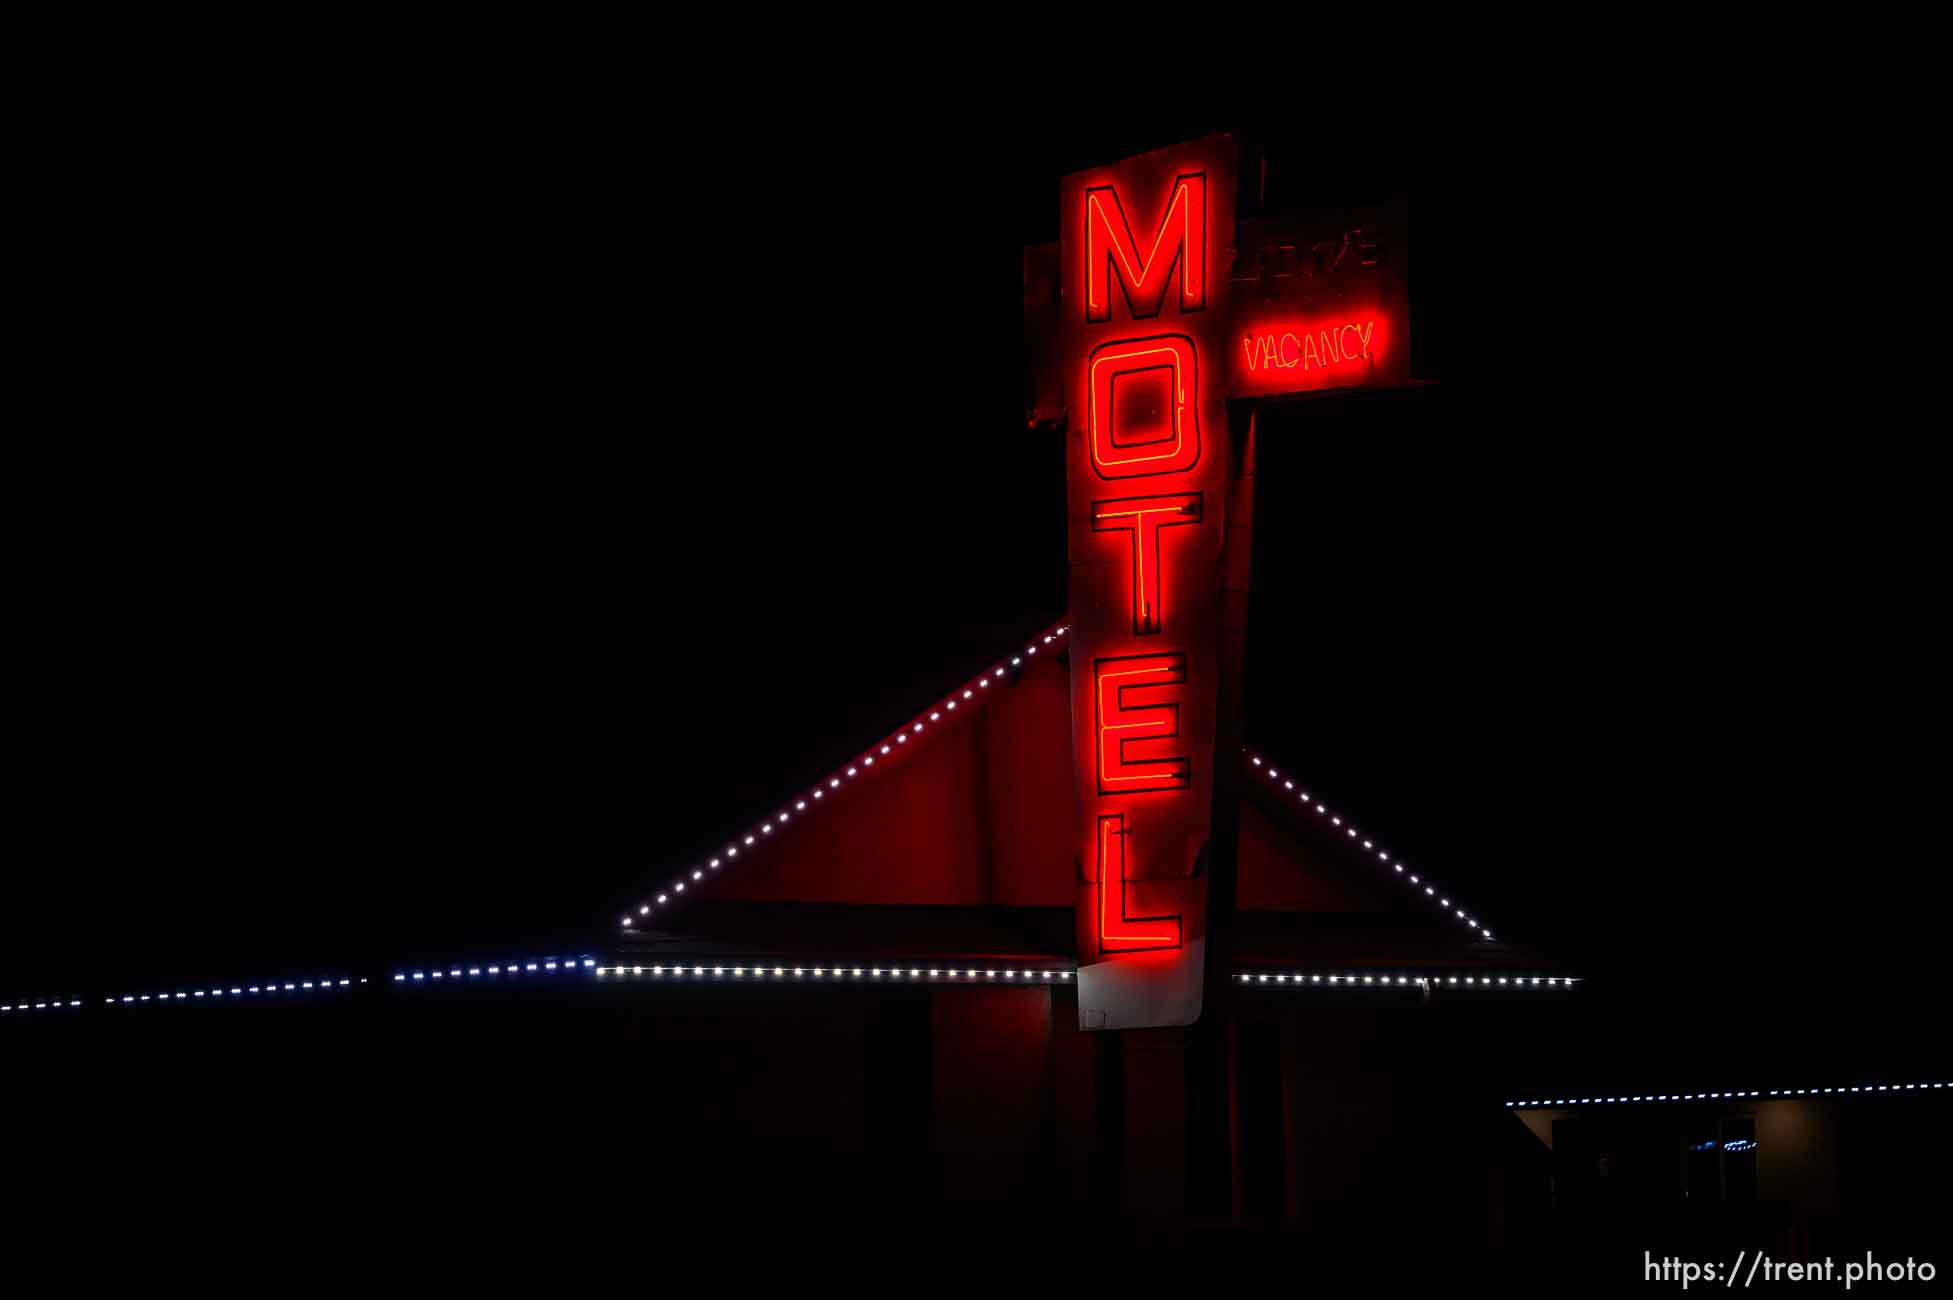 Zions Motel